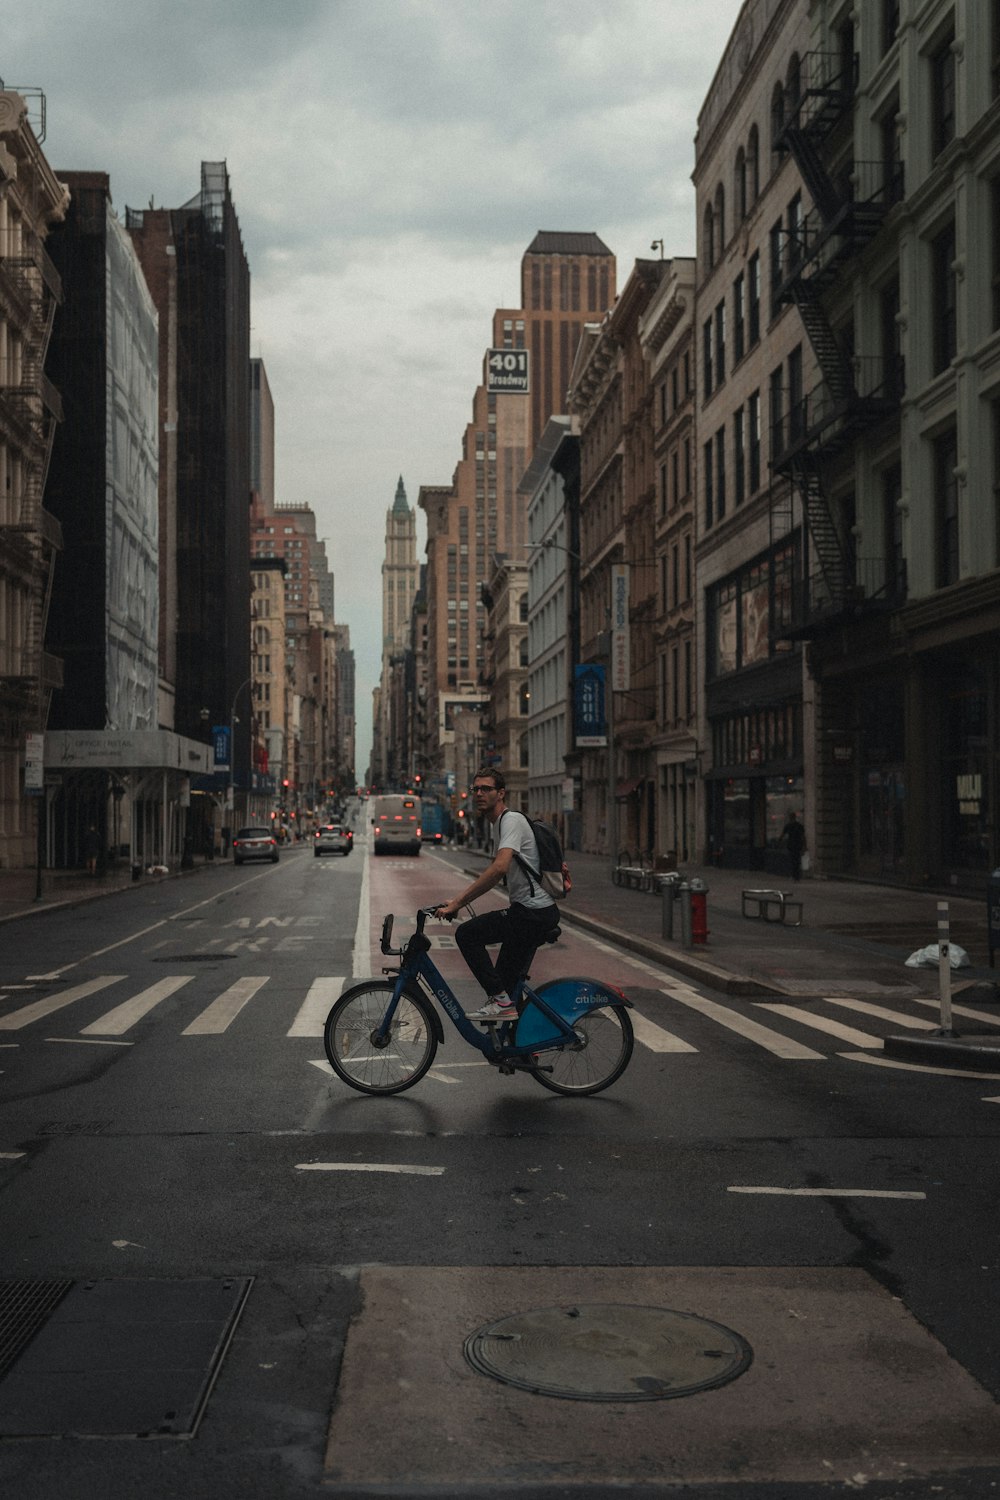 homem na camisa azul que monta a bicicleta na estrada durante o dia